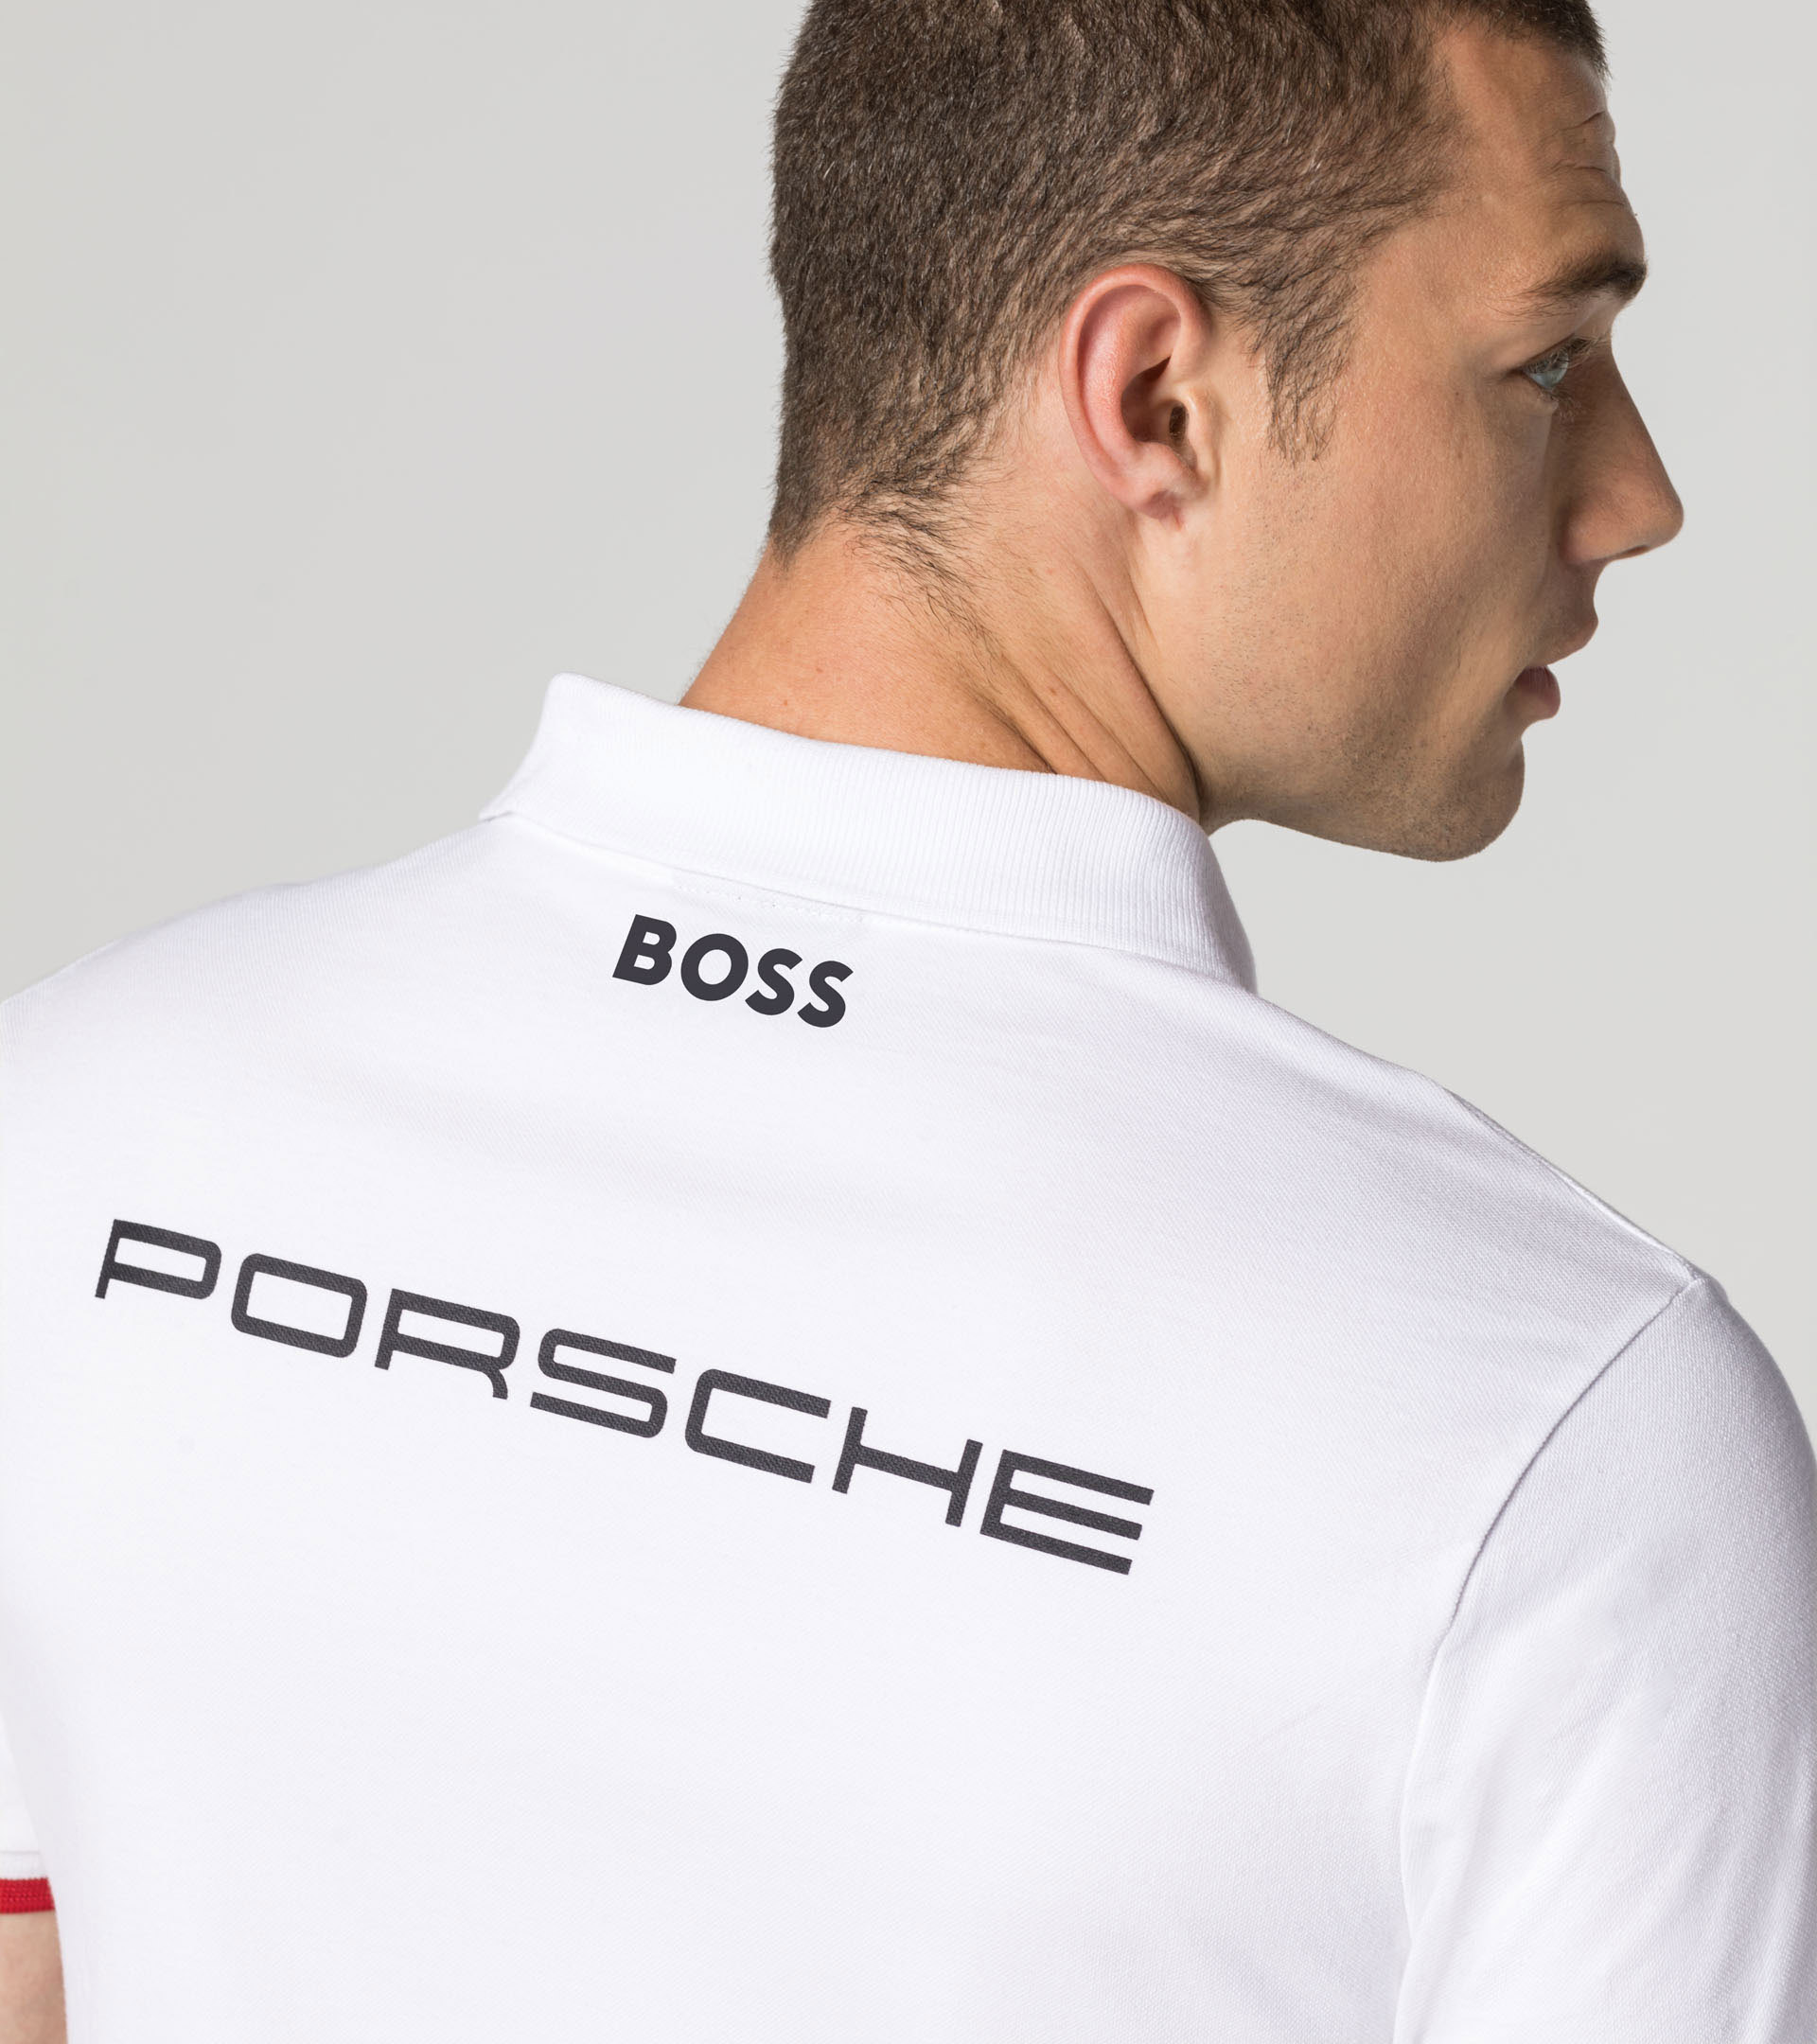 Polo PORSCHE Motorsport Team blanc pour homme - Pro-RS